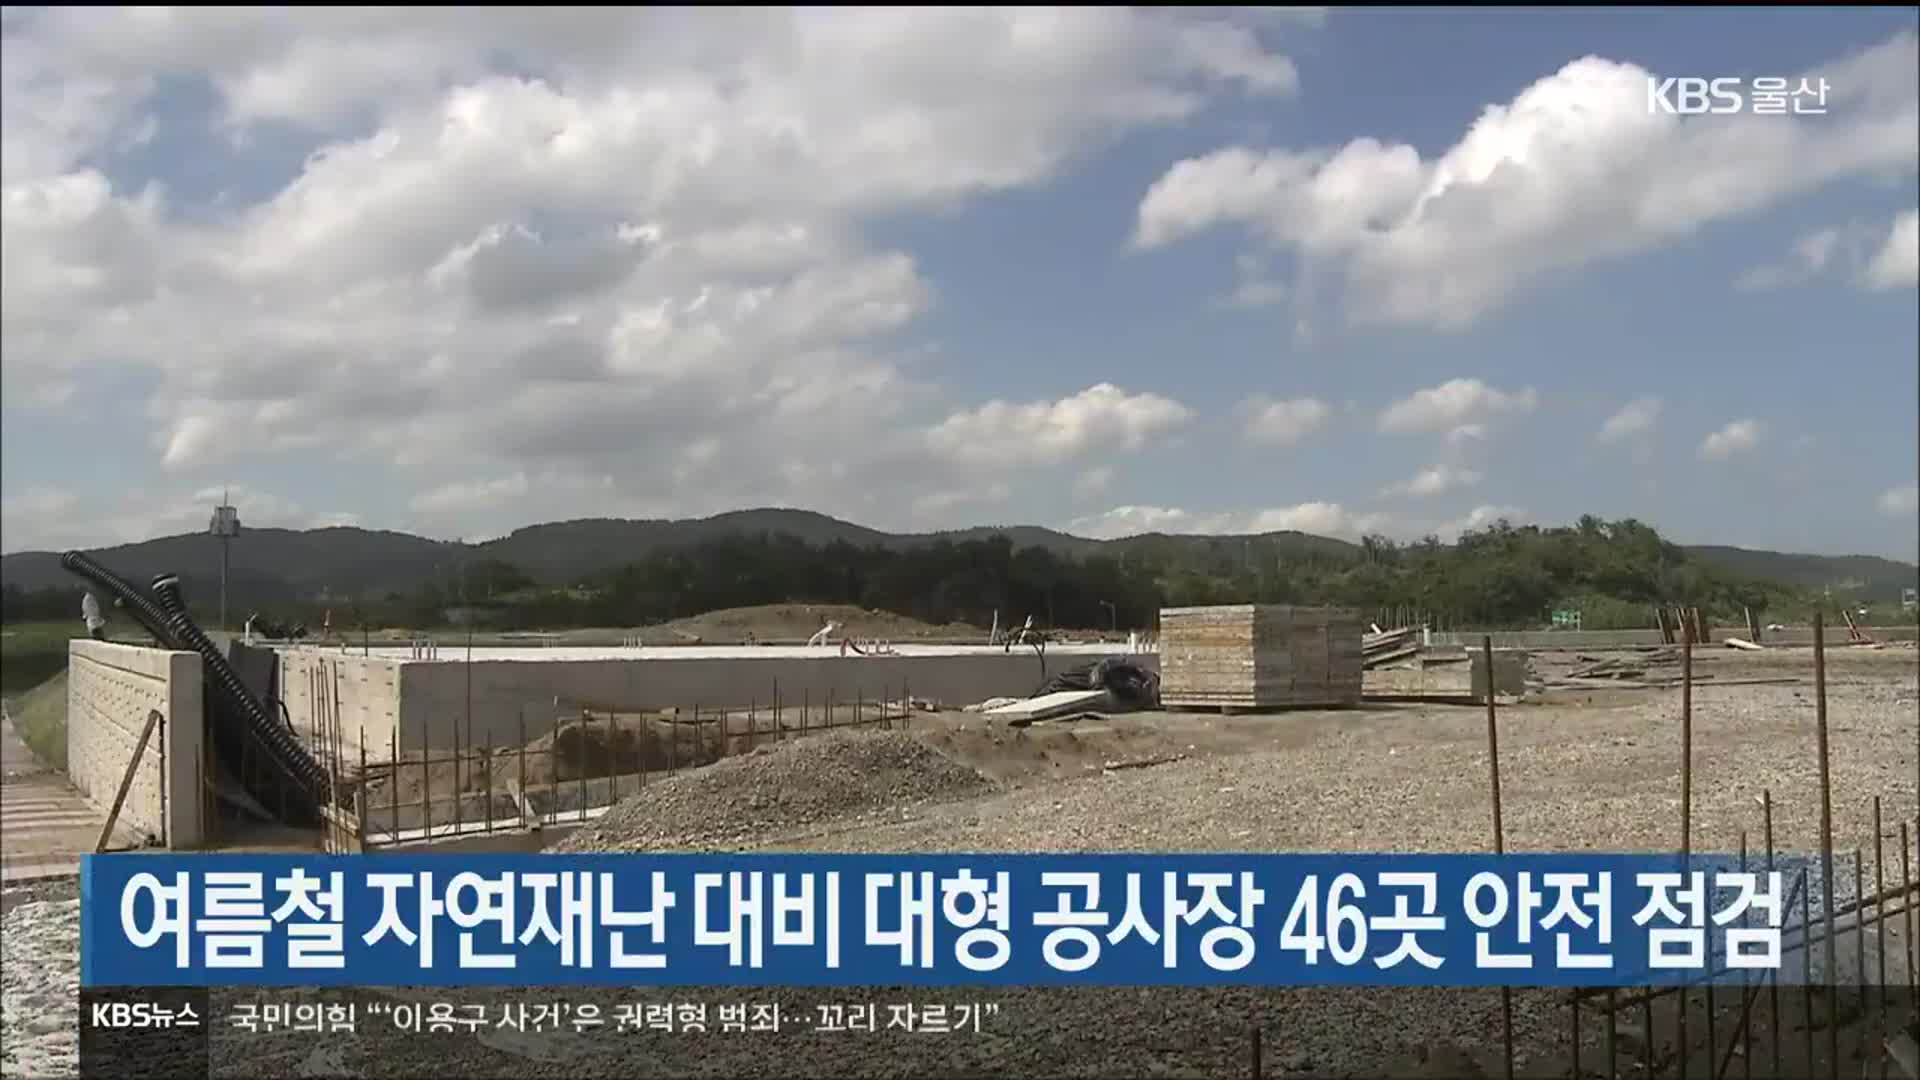 여름철 자연재난 대비 대형 공사장 46곳 안전 점검